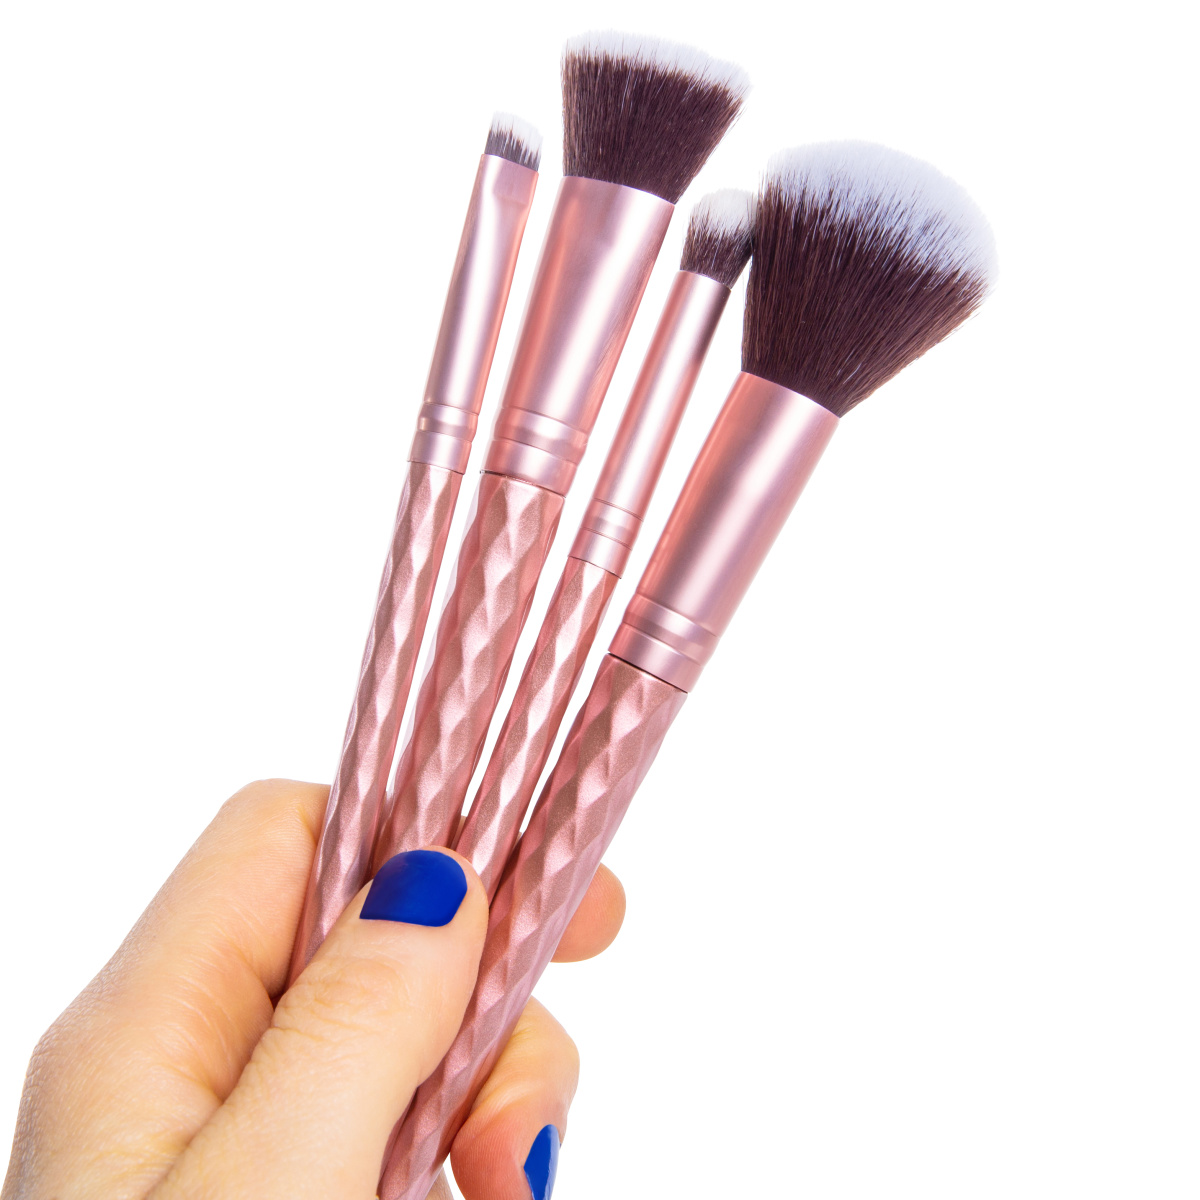 metallic pink makeup brush 4-piece set